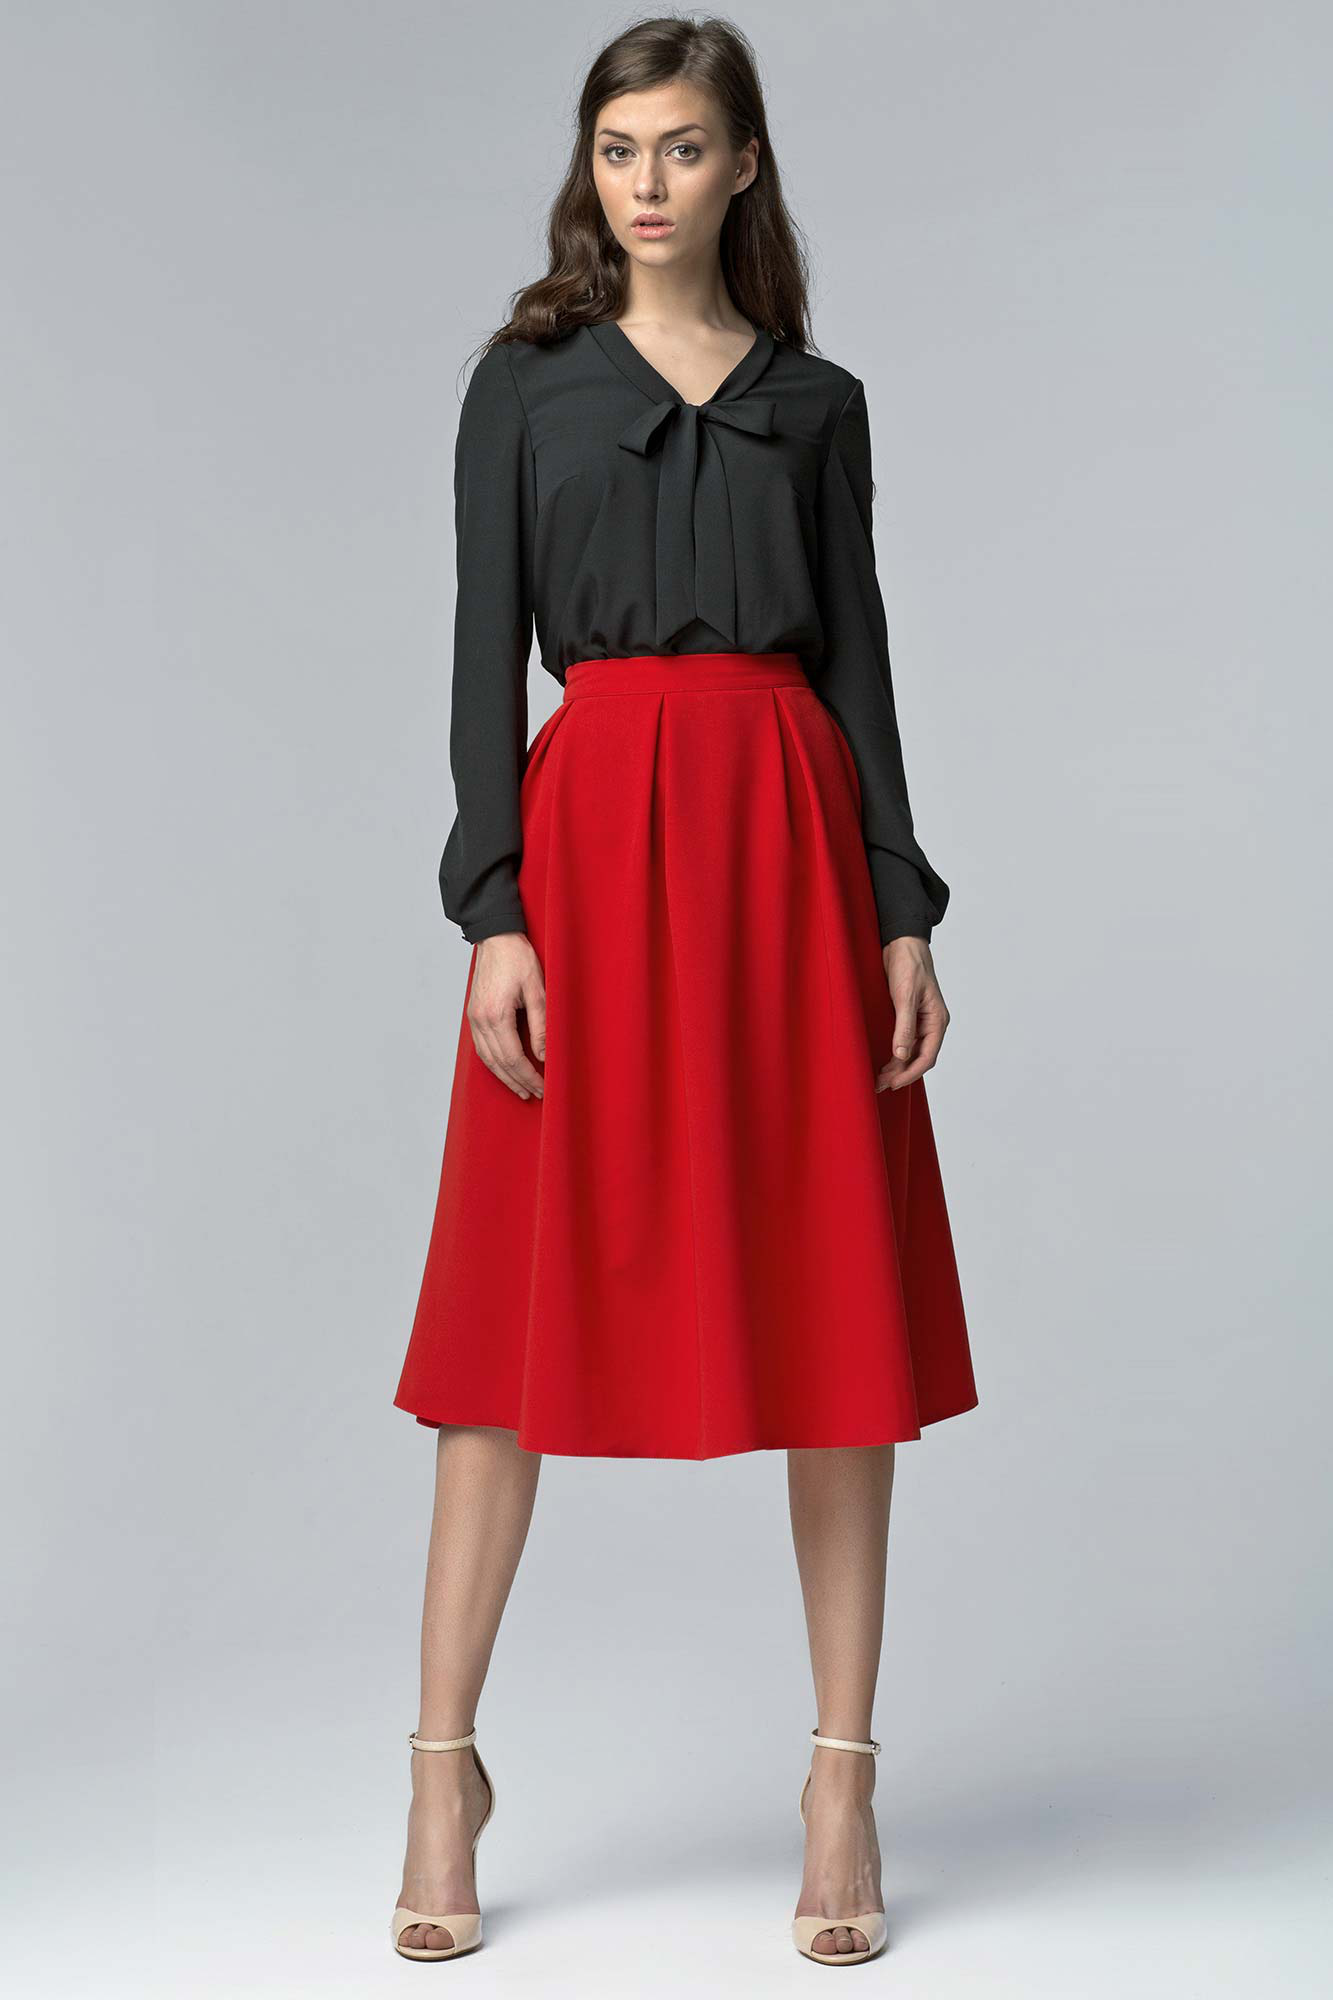 Red bell skirt, high waist, midi length